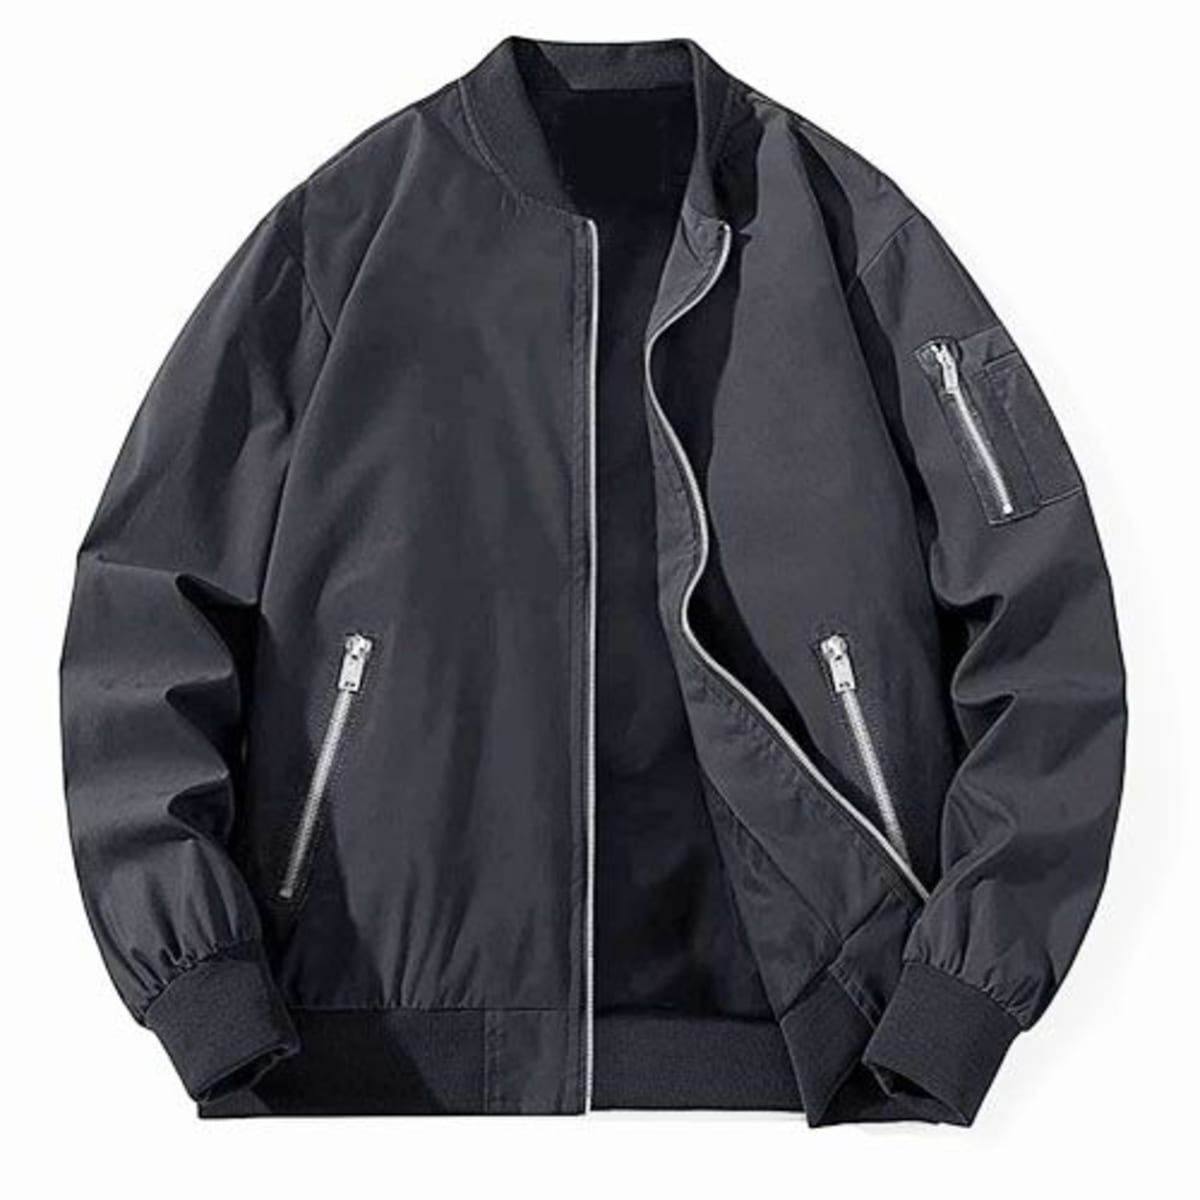 Fashion House Unisex Multi Zipper Black Bomber Jacket